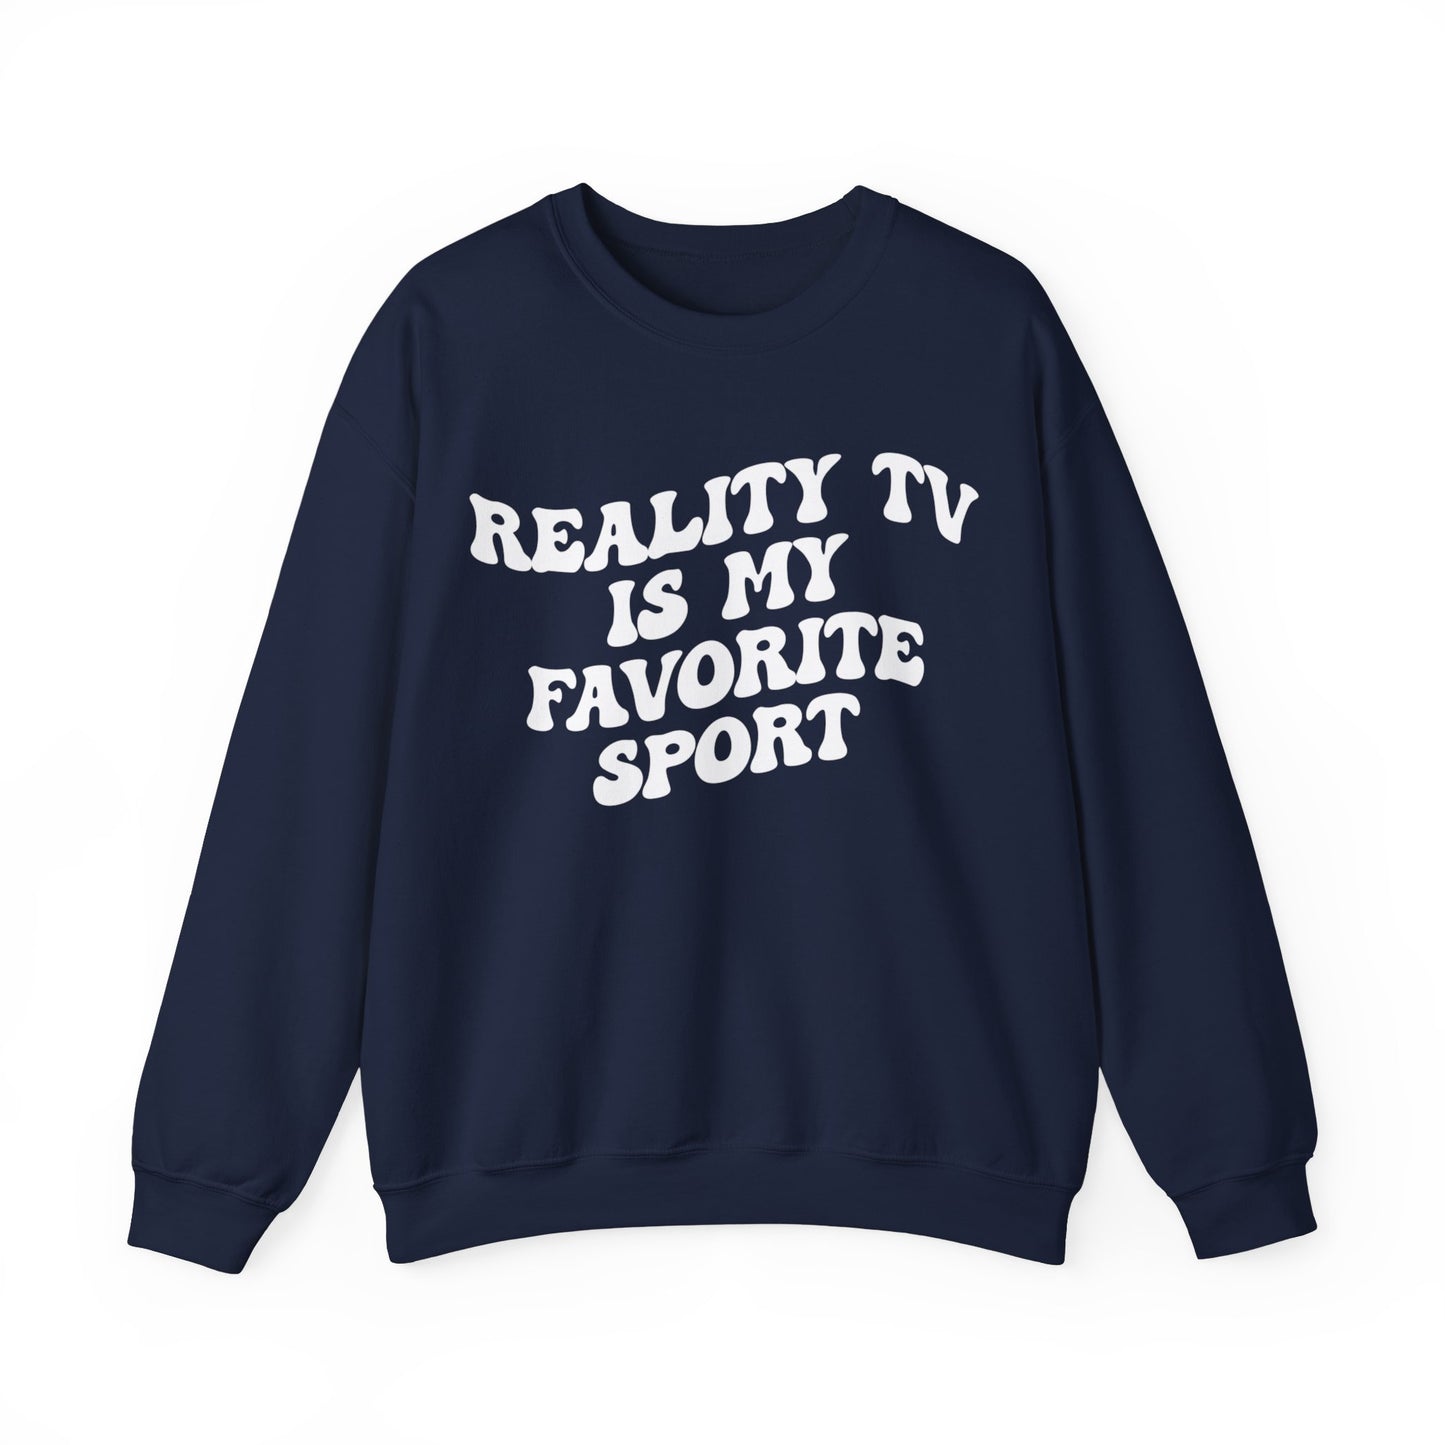 Reality TV Is My Favorite Sport Sweatshirt, Bachelor Fan Sweatshirt, Funny Shirt for Mom, Reality Television Fan Sweatshirt, S1503